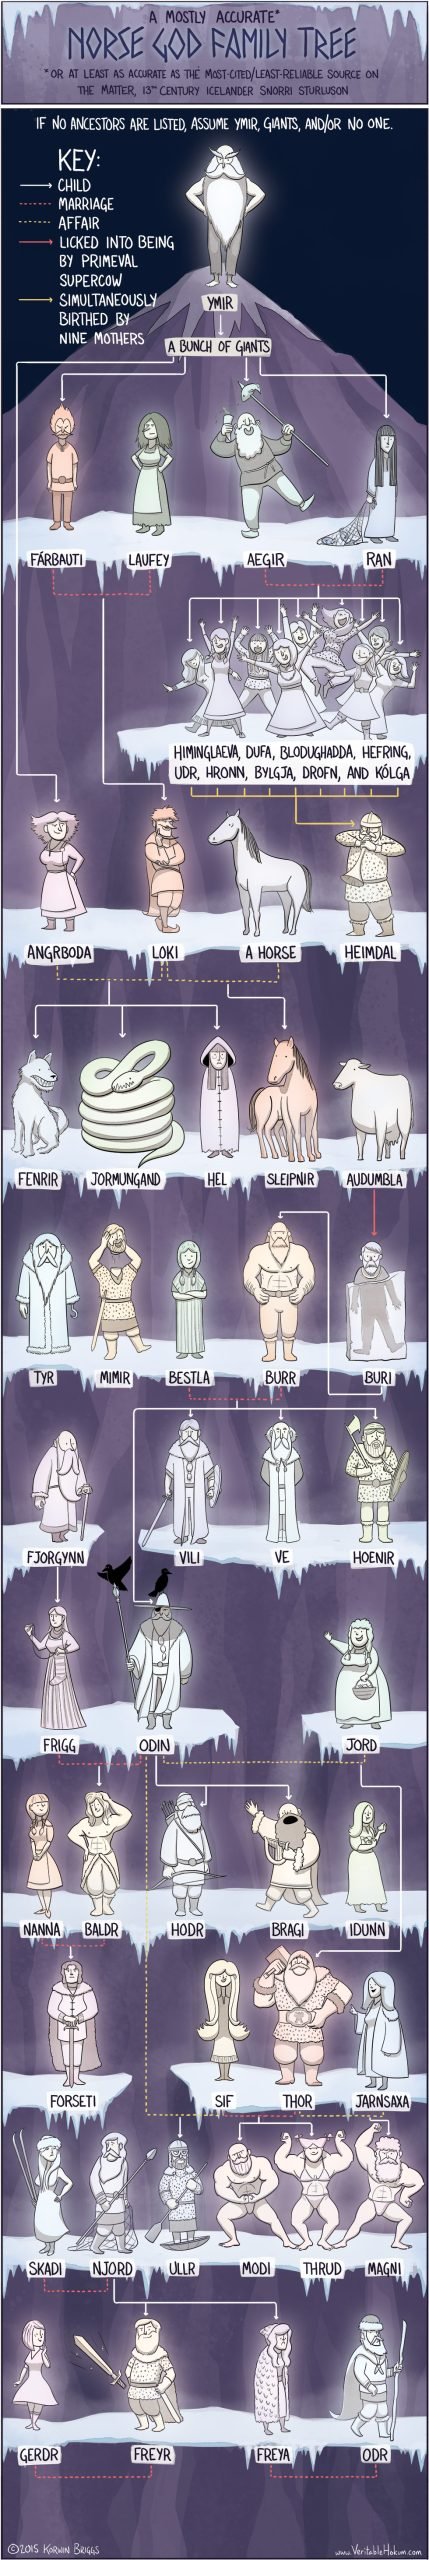 Norse Mythology Gods Genealogy